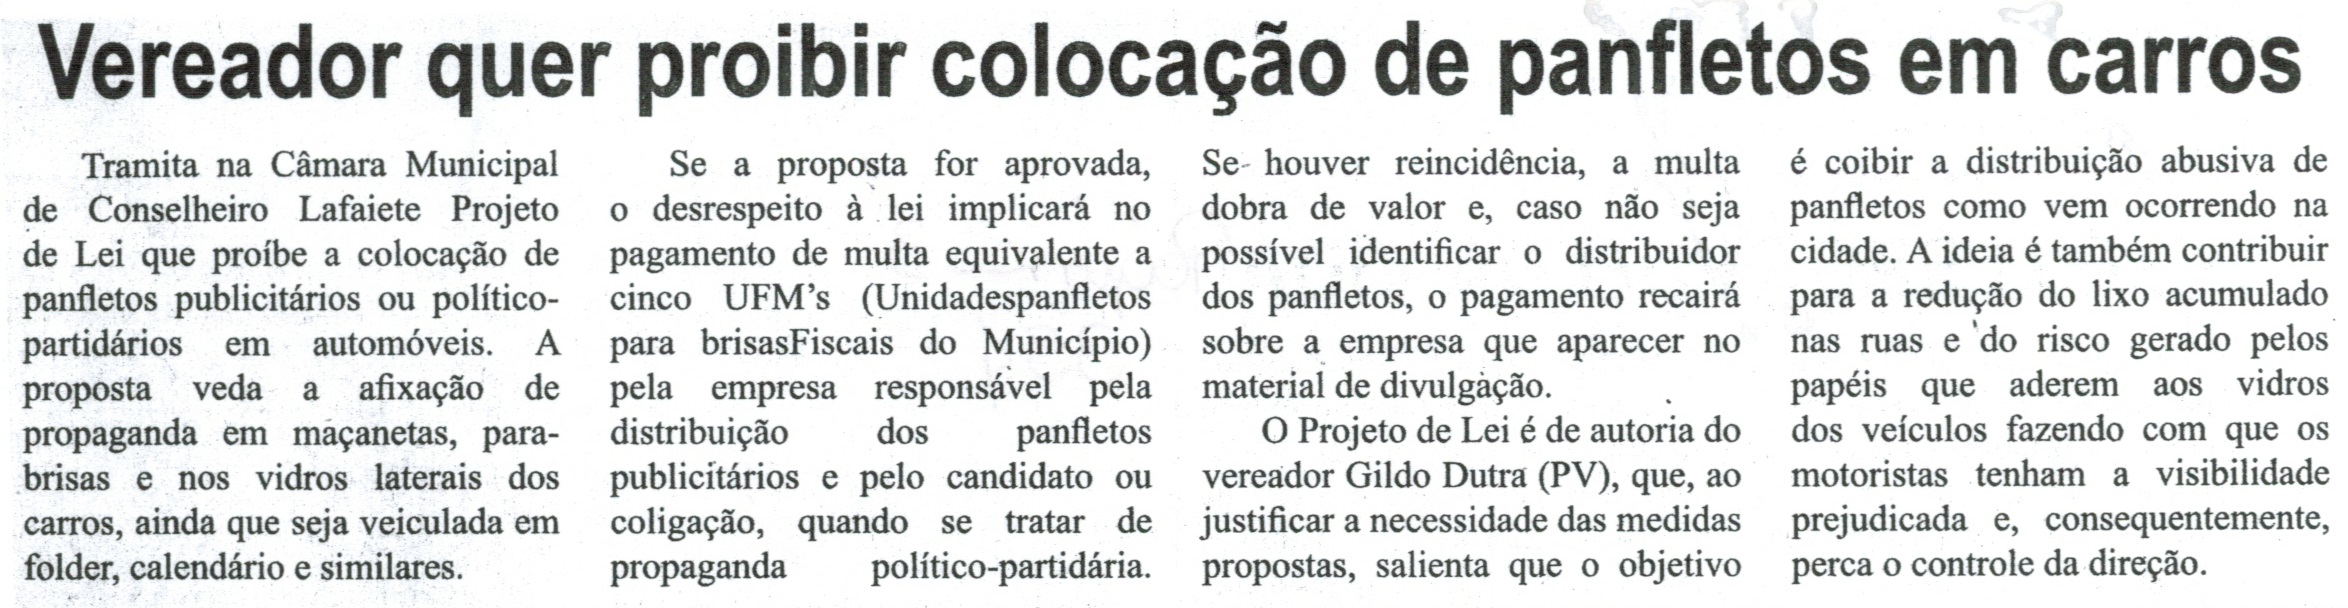 Vereador quer proibir colocação de panfletos em carros. Correio de Minas, Conselheiro Lafaiete, 06 set. 2014, p. 3.